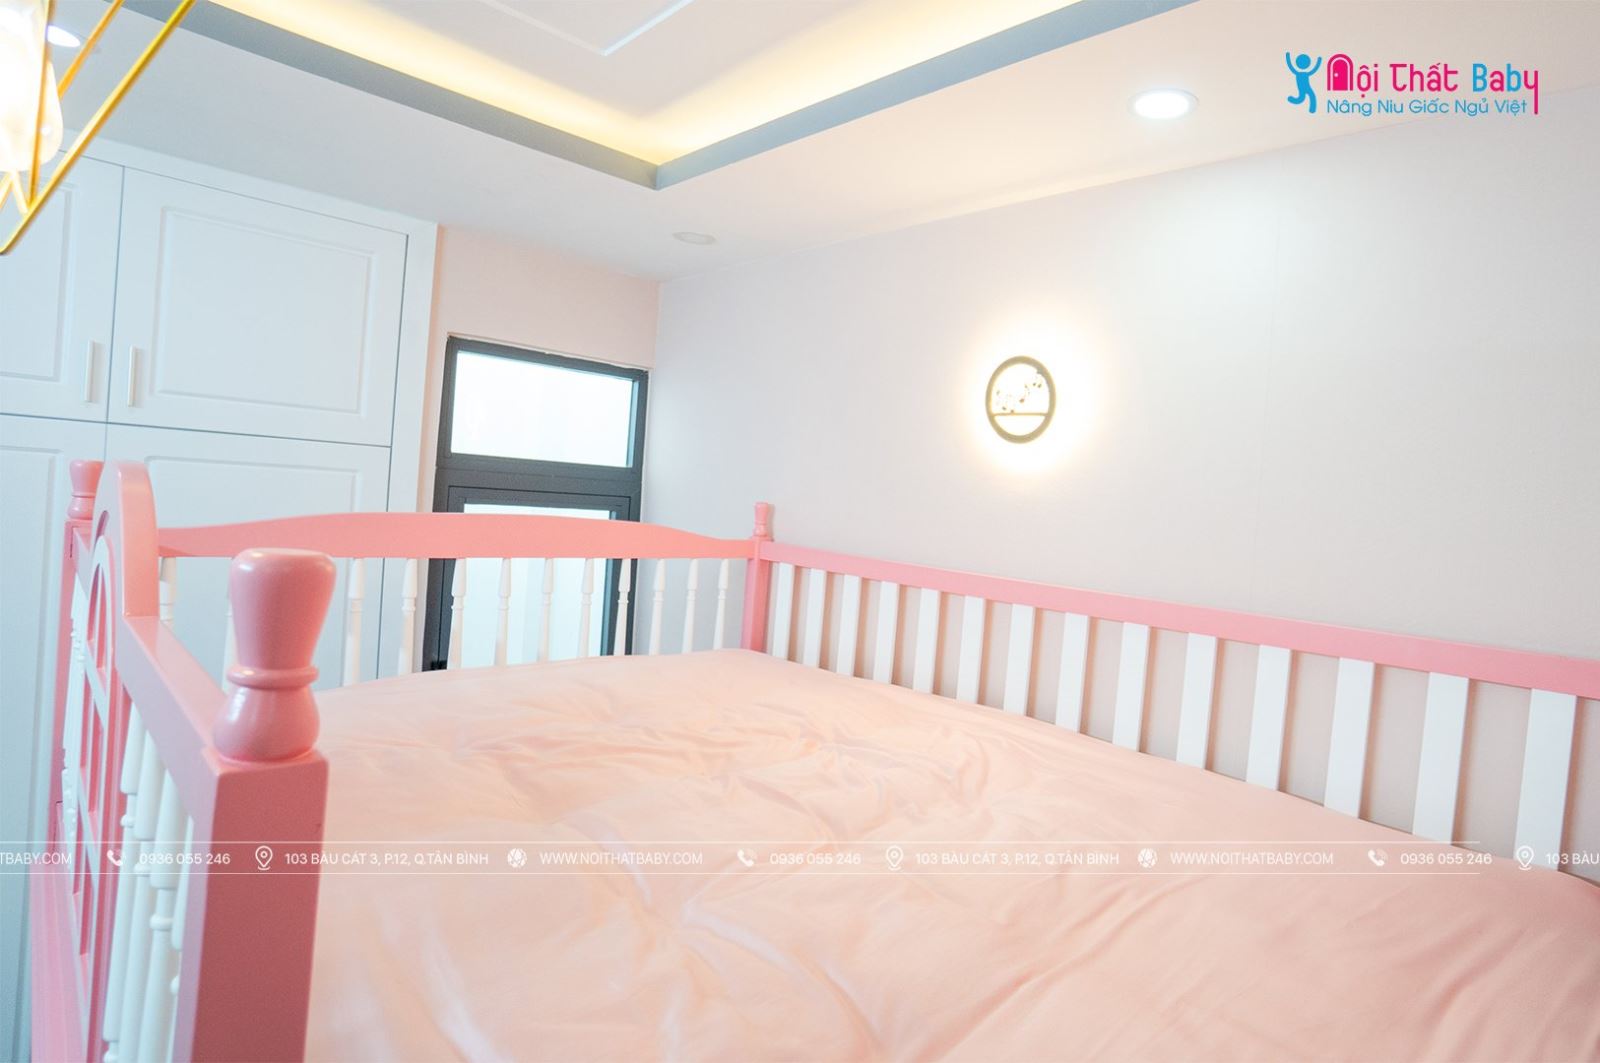 Hình ảnh hoàn thiện nội thất phòng ngủ bé gái đáng yêu nhà chị Huyền - Gò Vấp